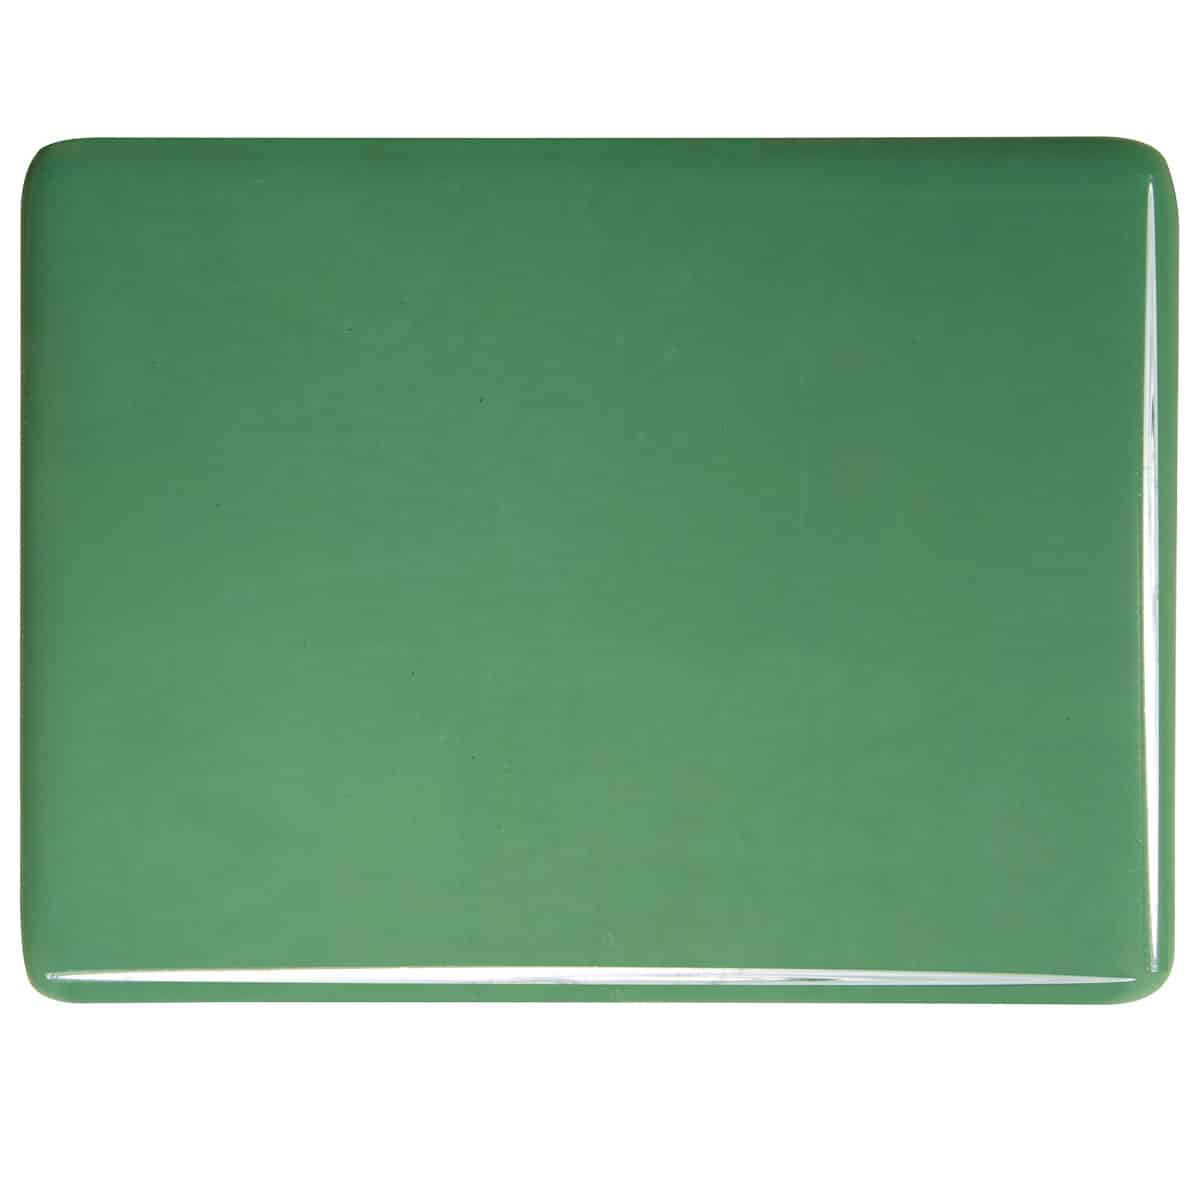 Mineral Green Opal sheet glass swatch